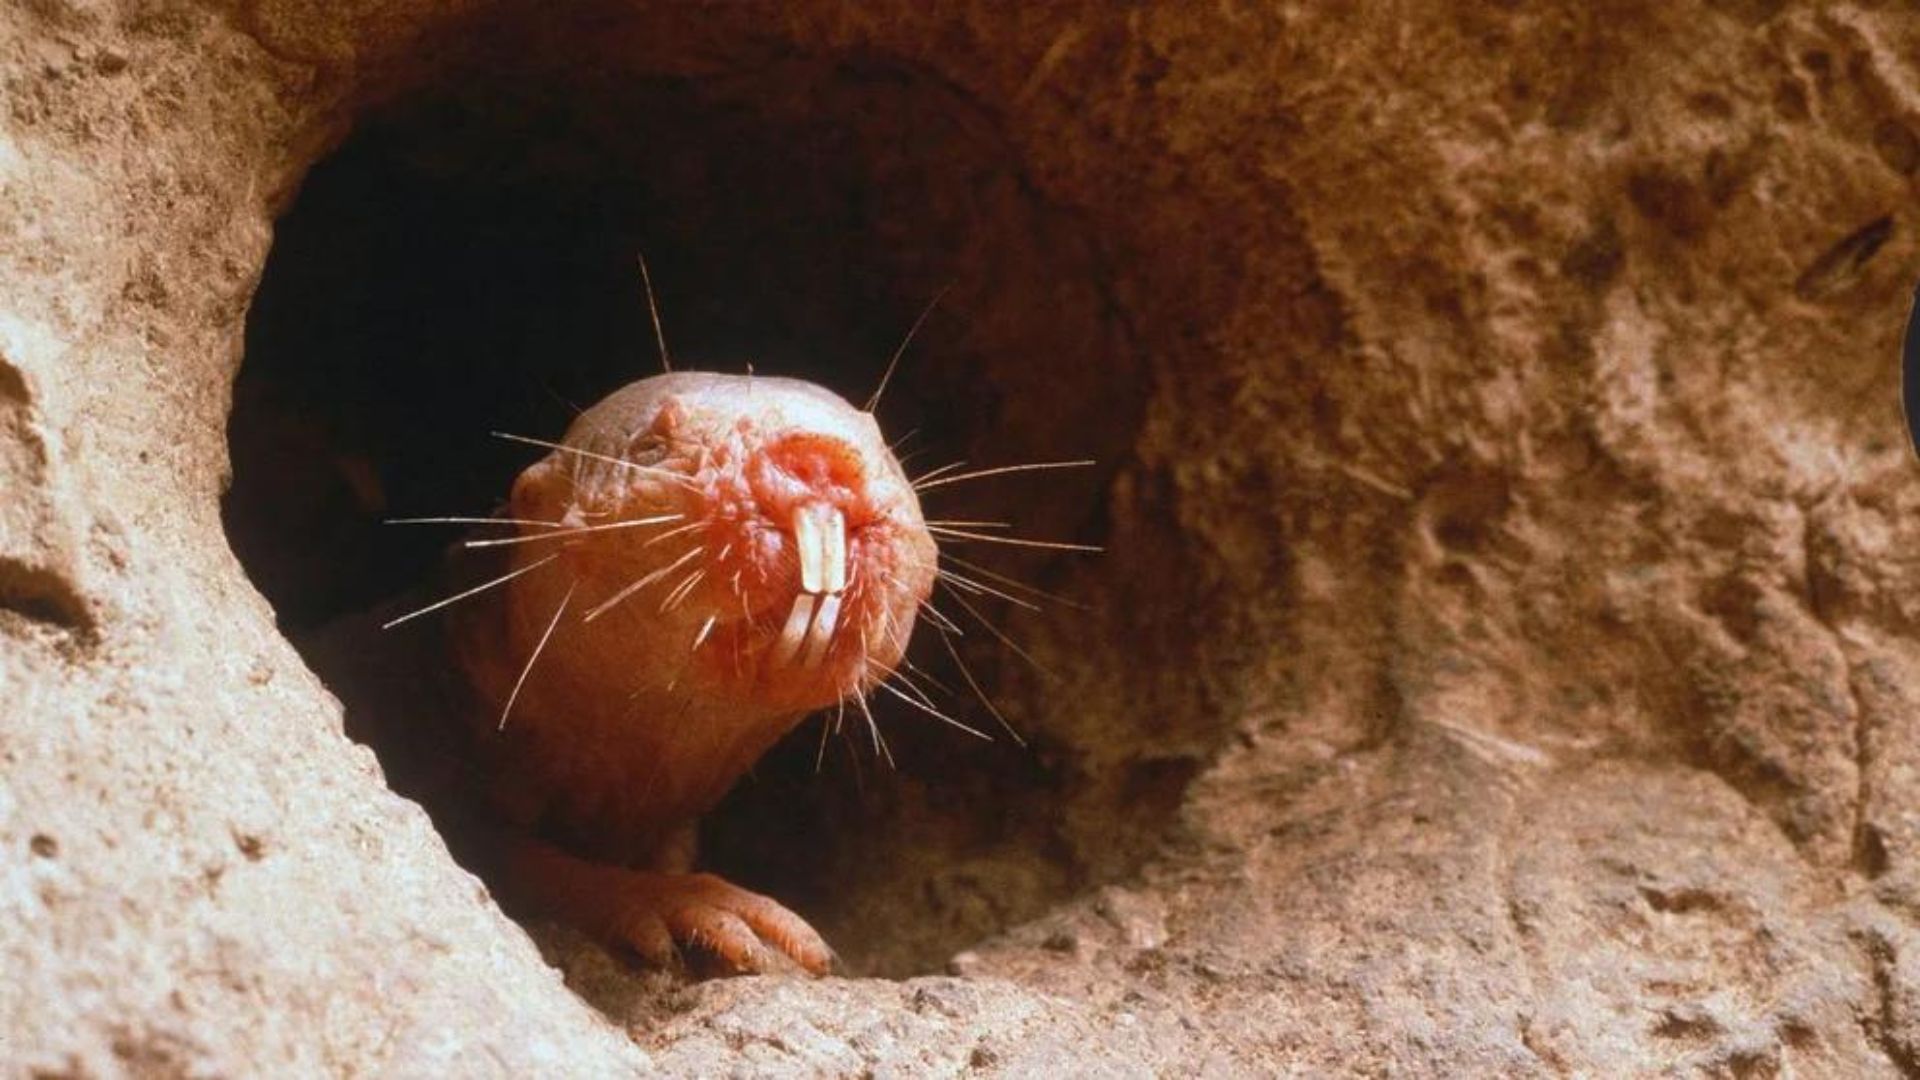 Este roedor cuenta con una gran capacidad para resistir el cáncer, según la ciencia. (Shutterstock)